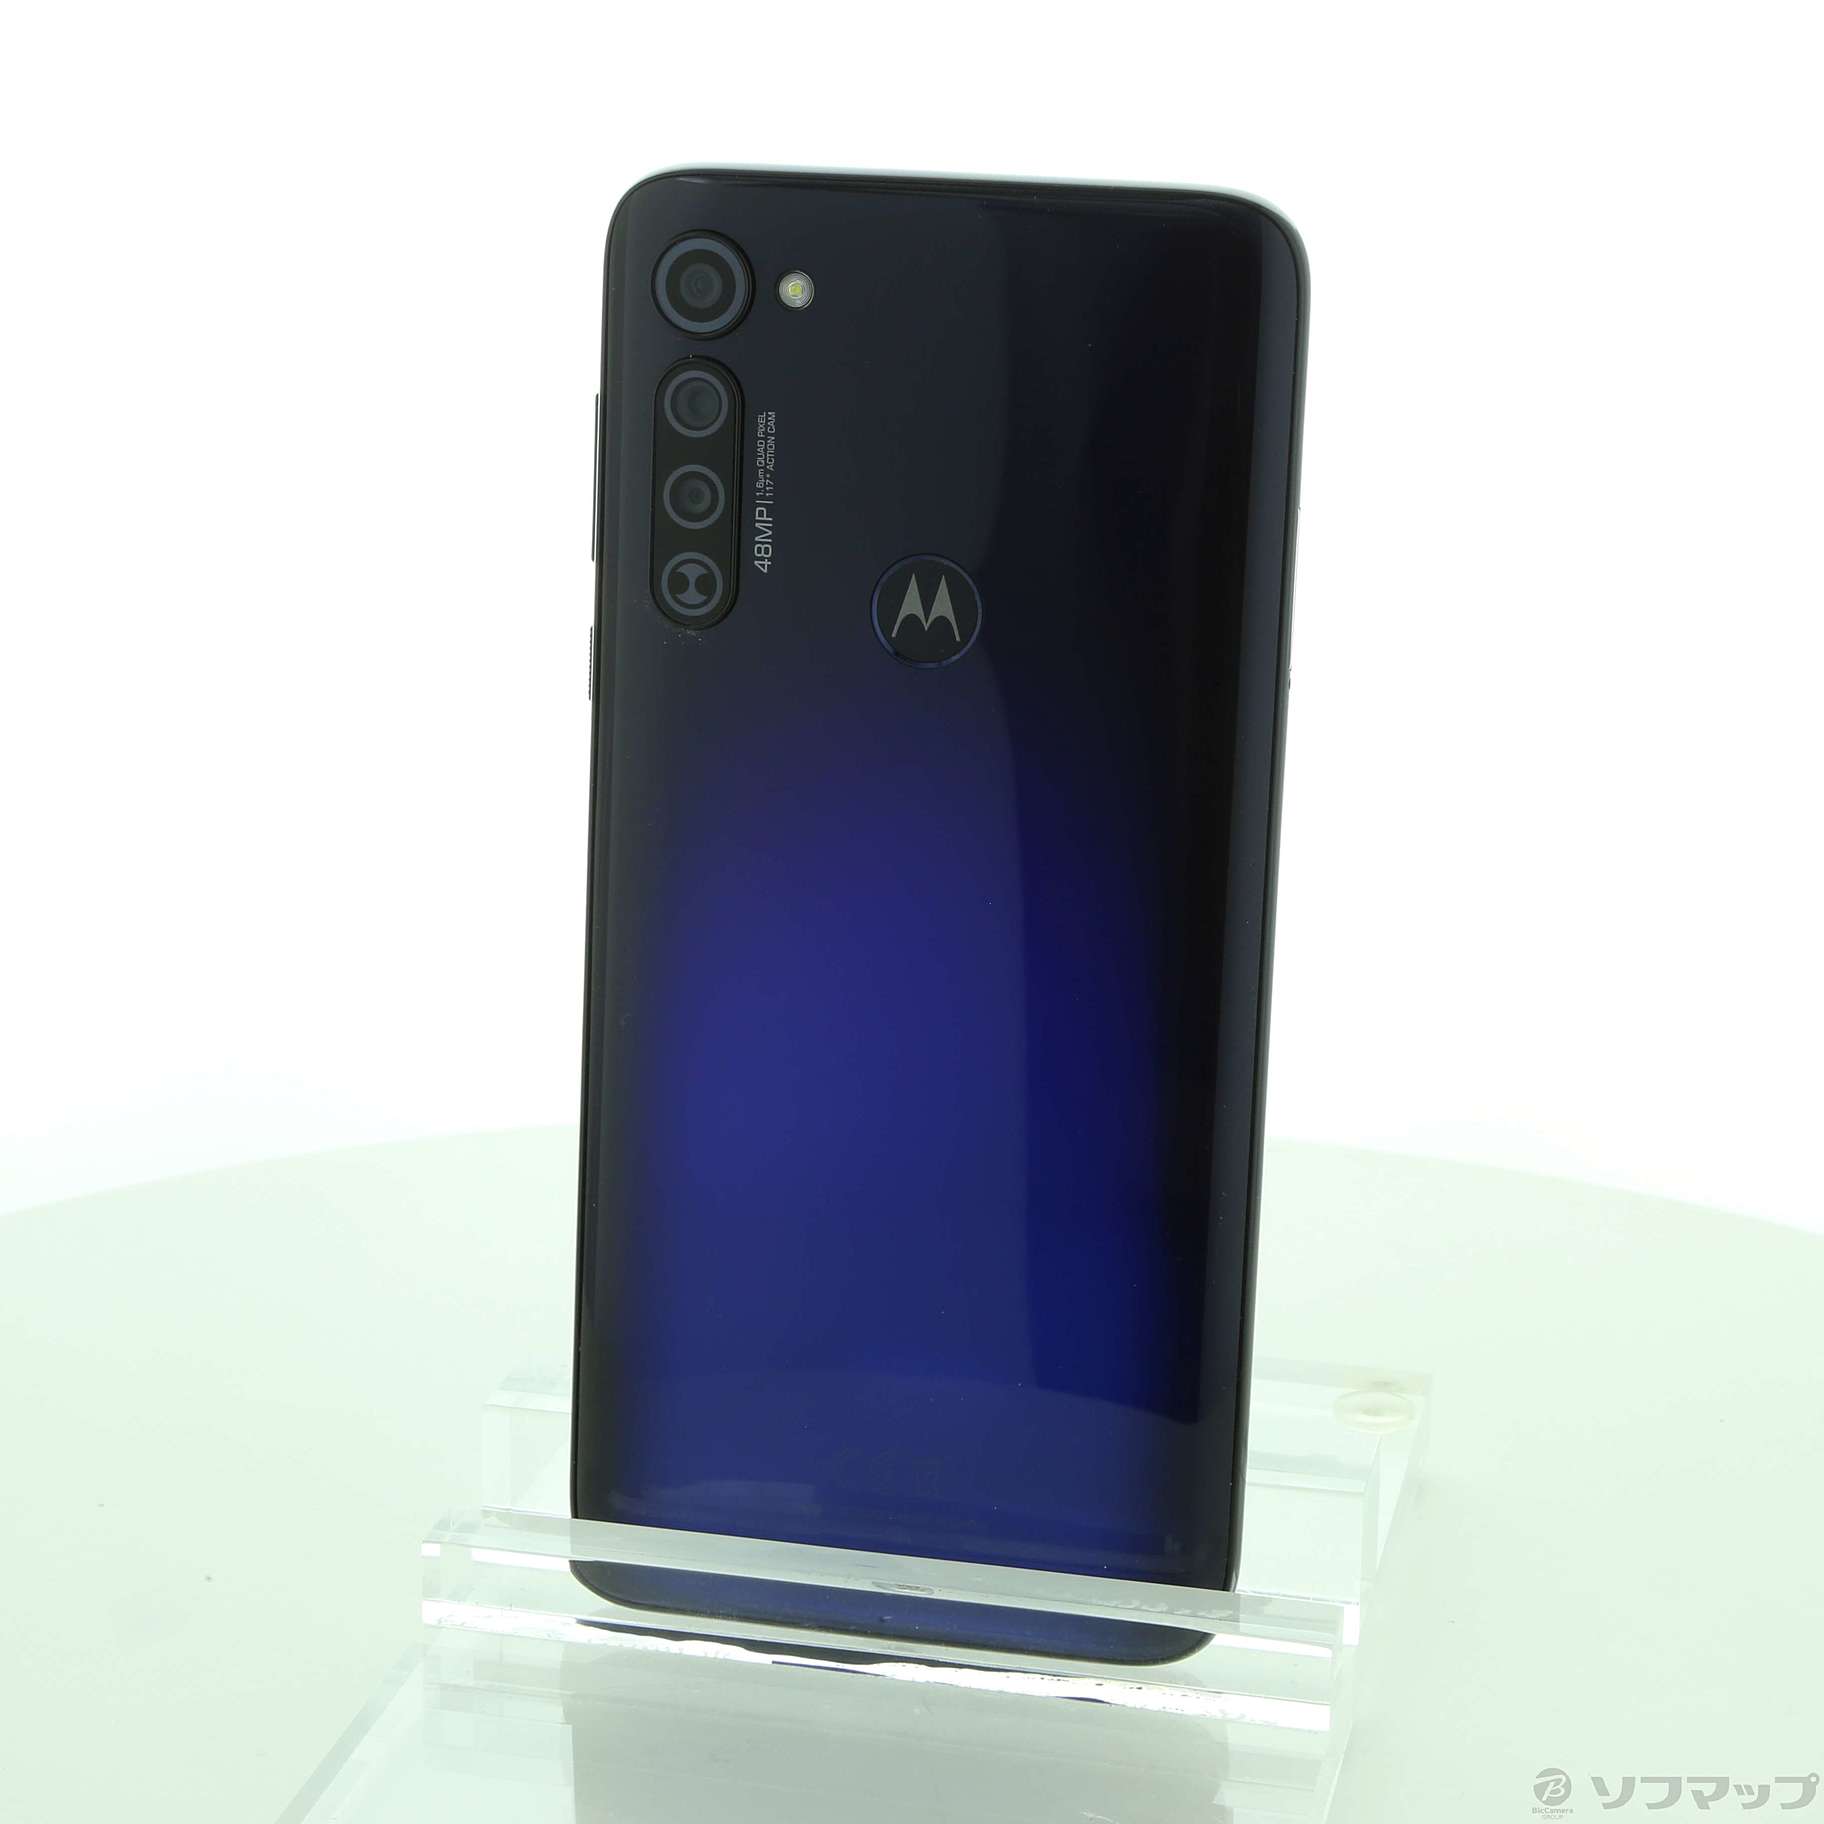 新品 Motorola moto g PRO 4GB/128GB simフリース